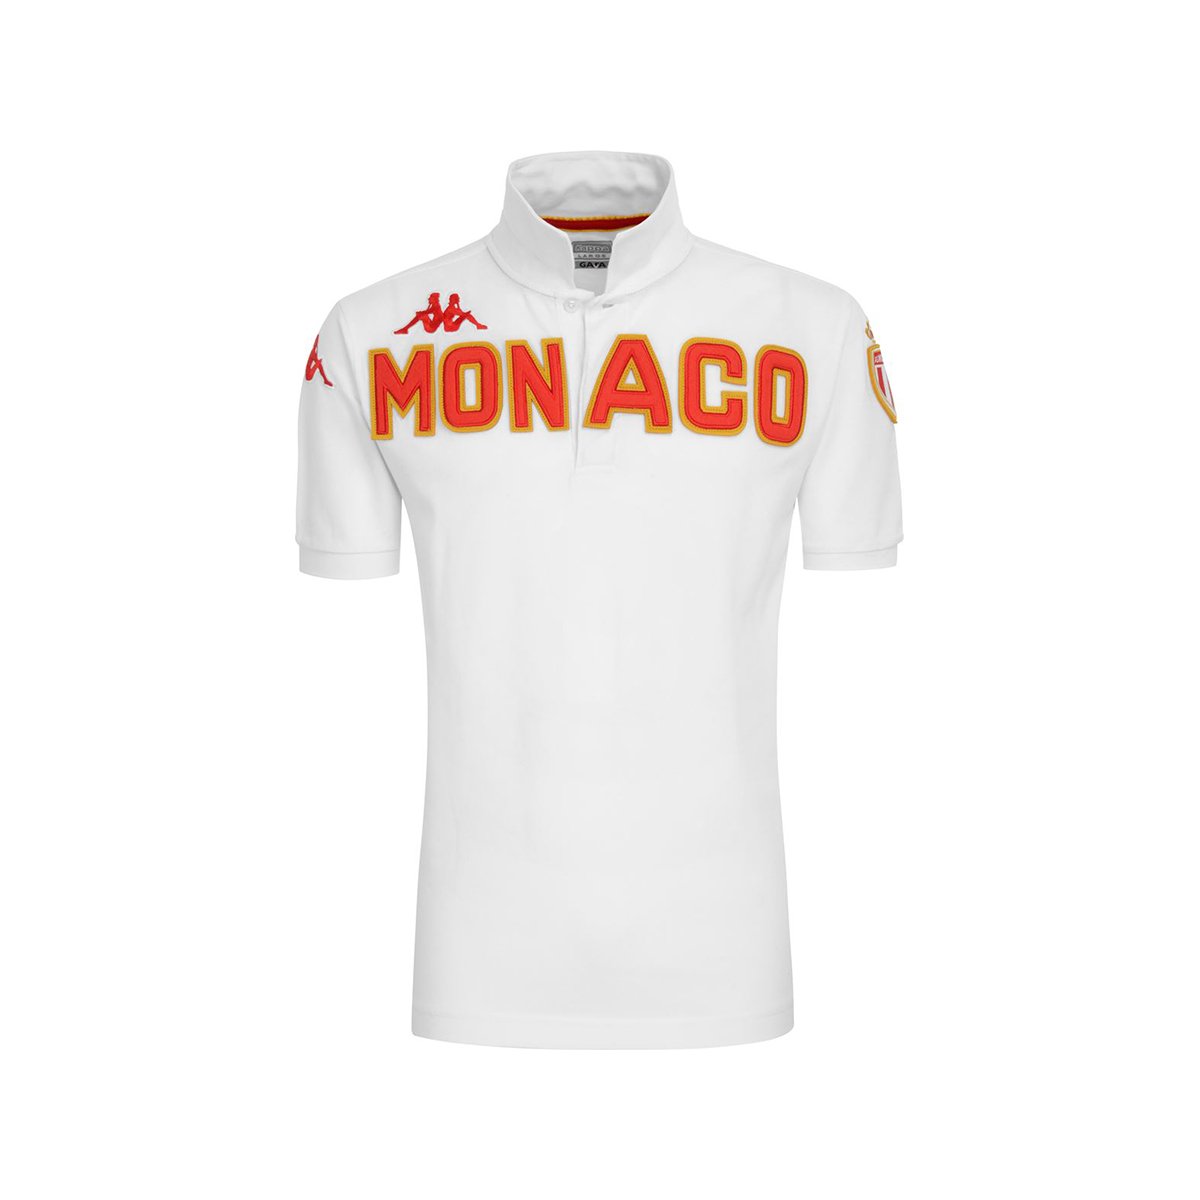 Polo Eroi Polo As Monaco Homme - image 1